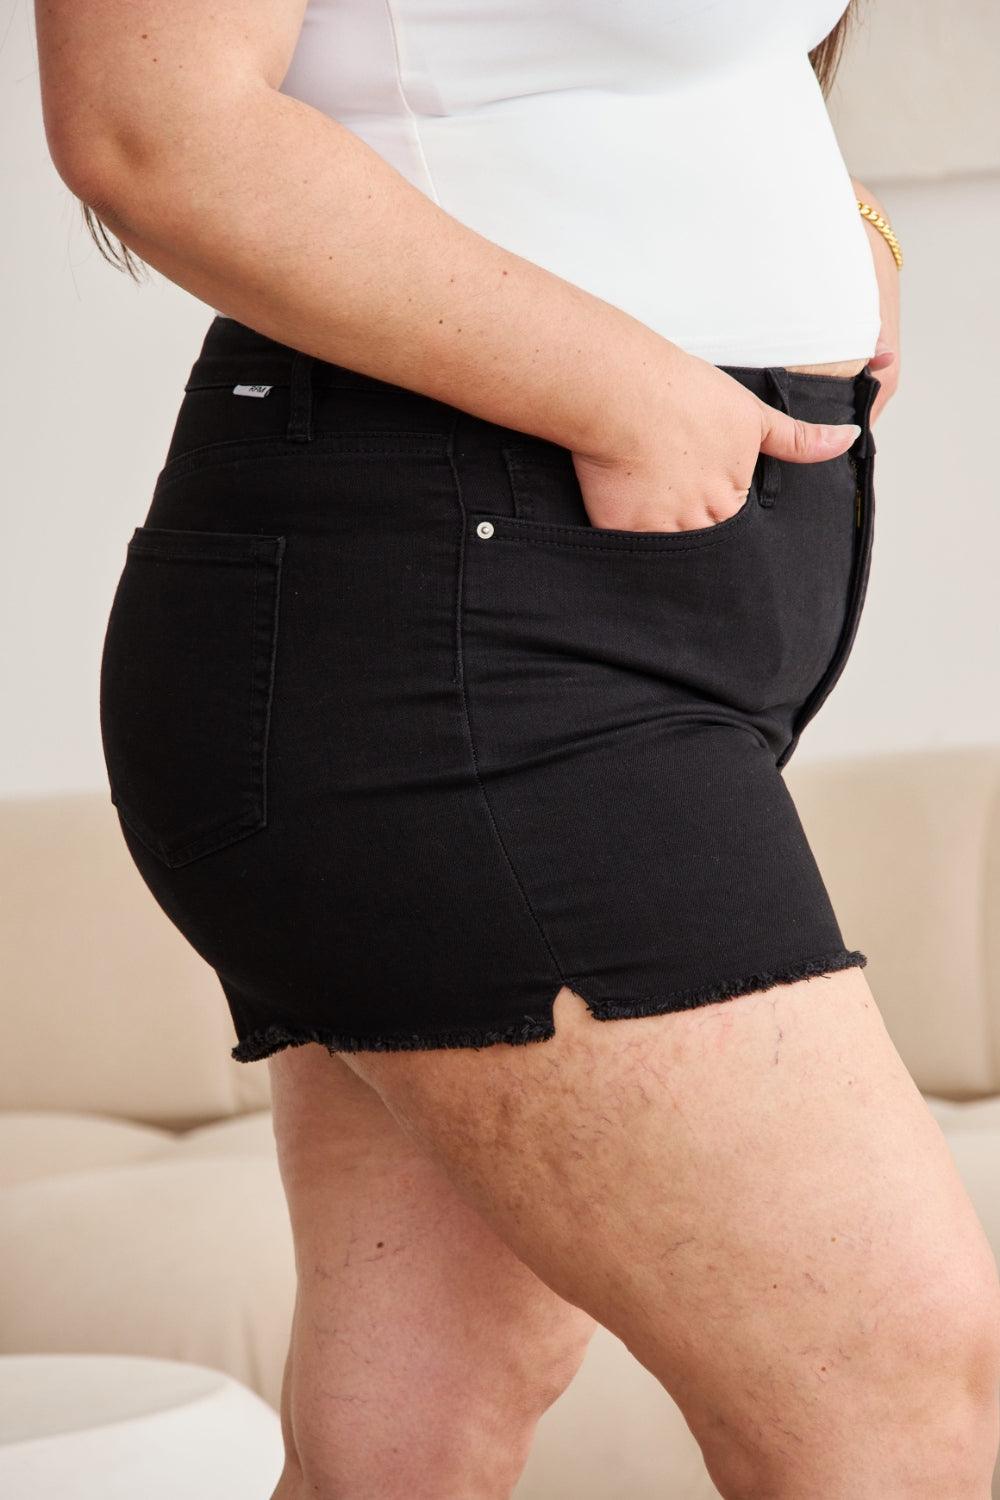 Bona Fide Fashion - Full Size Tummy Control High Waist Denim Shorts - Women Fashion - Bona Fide Fashion